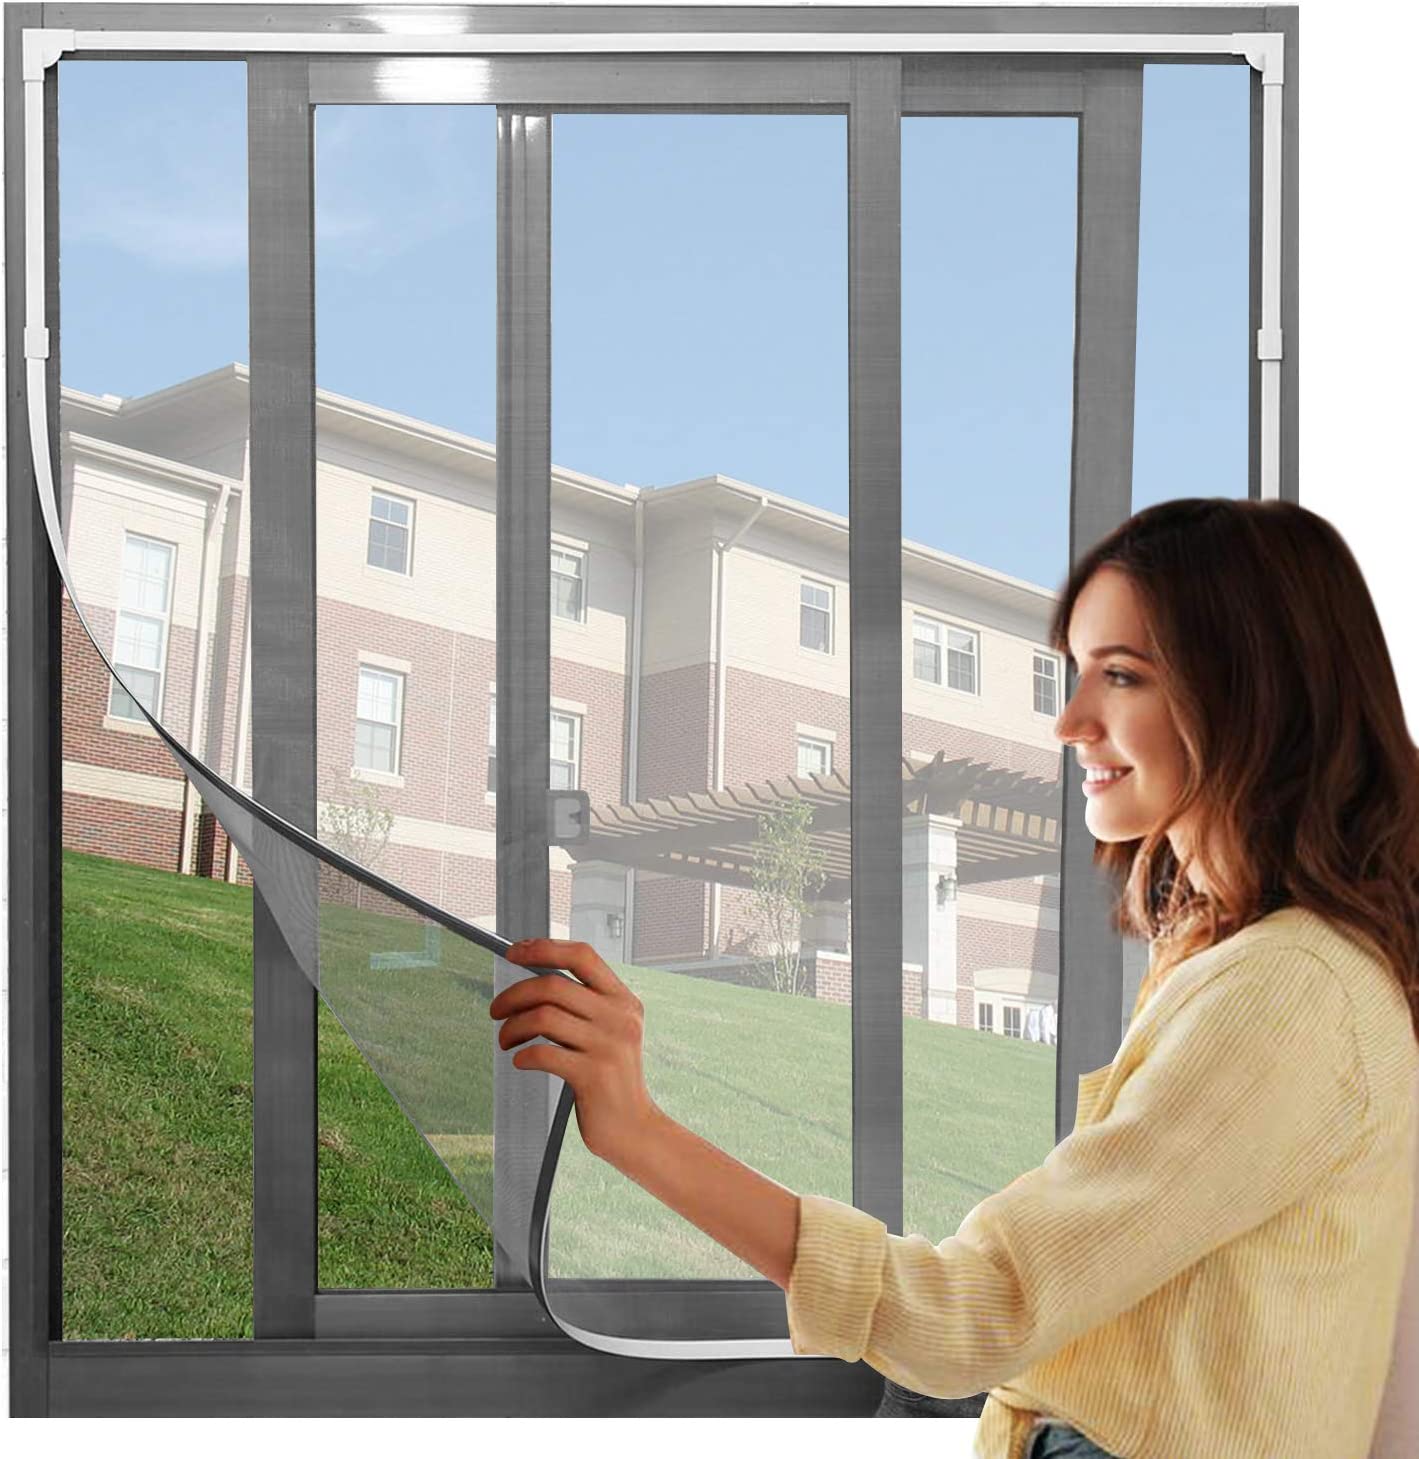 サイズ： 50*90CM 色：ネット：灰/白、枠：ブラウン/グレー/ホワイト 予め窓のサイズを確認してからご注文してください。 【抜群な防虫・防蚊】：こちらの虫除け網戸は、高密度メッシュで微細な虫・蚊の侵入も防ぎます。隙間もなく全面覆う窓用網戸タイプなので、虫除け網戸を窓枠に設置しておくと、窓を閉めなくても、虫や蚊などの侵入を気にせず、空気の通しが良くできます 【カット可能・サイズ調節可能】：この防虫ネットは、カットによるサイズ調節が可能です。お宅の窓大きさに完璧に合わせて防虫ネットをカットできます。だから、この防虫ネットはどんな窓枠にも網戸がぴったりと納まります。この防虫ネットキットがあれば、網戸を作るお手間もお金も節約します 【工事不要・取付簡単】：蚊よけあみどは粘着テープ付きマグネット式なので、木製・鉄製・アルミ製など窓枠の素材を選ばず、簡単に取り付けることができます。 取り付け＆取り外しが簡単＆収納便利、ツールは不要です！付属のテープだけでドアフレームに固定するだけで完了です。使わない季節には取り外し、折りたたんでコンパクトに収納できます、女性の方でも簡単に操作できます。 【通風性】：この蚊よけ網戸の開口率が高く風通しも優れています。十分な風通しも得ることができます。夏には、エアコンを使わずに本品を取り付けることによって、空気の入れ替えが出来、風通しが良くなり涼しく暮らすことができます 【優れた耐久性】：こちらの虫よけ網戸は、永久磁石を採用し、繰り返し開閉できます。高品質のメッシュを使用し、精密縫製と高密度のメッシュ技術を採用、多くの開閉でも丈夫で損耗しません。また、虫よけ網戸は取り外せるので、そのまま丸洗いができます。お手入れもラクラクです ◇保証期間：到着日から1か月以内にご連絡ください ※お客様ご都合の交換と返品は、お承っておりませんのであらかじめご了承ください。 ※ご注文の商品が「不具合がある」など当社原因による場合には、 商品到着後「1か月以内」に電話もしくはメールにて ご連絡いただいた商品は交換または返品を受け付けさせていただきます。 ◇お客様都合によるキャンセル（商品発送前） ご注文から30分以内は、理由の有無を問わず購入履歴からキャンセルすることが可能です。 なお、当店では、ご注文から30分以上過ぎた場合、お客様都合によるキャンセルは承っておりません。 あらかじめご了承ください。 ◇ 配送方法について ◇ ※ 発送後のキャンセル・送付先の変更はできません。 ※ 届かない場合や、転居による紛失に関しての補償は一切ありません。 ご注文前に、送付先に誤りがないか、部屋番号抜け等がないかを必ずご確認ください。 ※ 長期不在・表札がない・表札や郵便受けに書かれたお名前がご注文者のお名前と異なる場合、 お届けができず自動的に返送となる場合がございます。 返送された場合、返送・再配達にかかる送料はお客様負担となります。ご了承ください。 ◇ 注意事項 ◇ ※ ご利用のモニターによって、実物とすこし異なる色に表示される場合がございます。 ※ 全商品、北海道・沖縄・離島は別途 送料が掛かります。 ※ ラッピング対応しておりませんので、ご了承ください。 ※ 説明書は日本語化されていません。